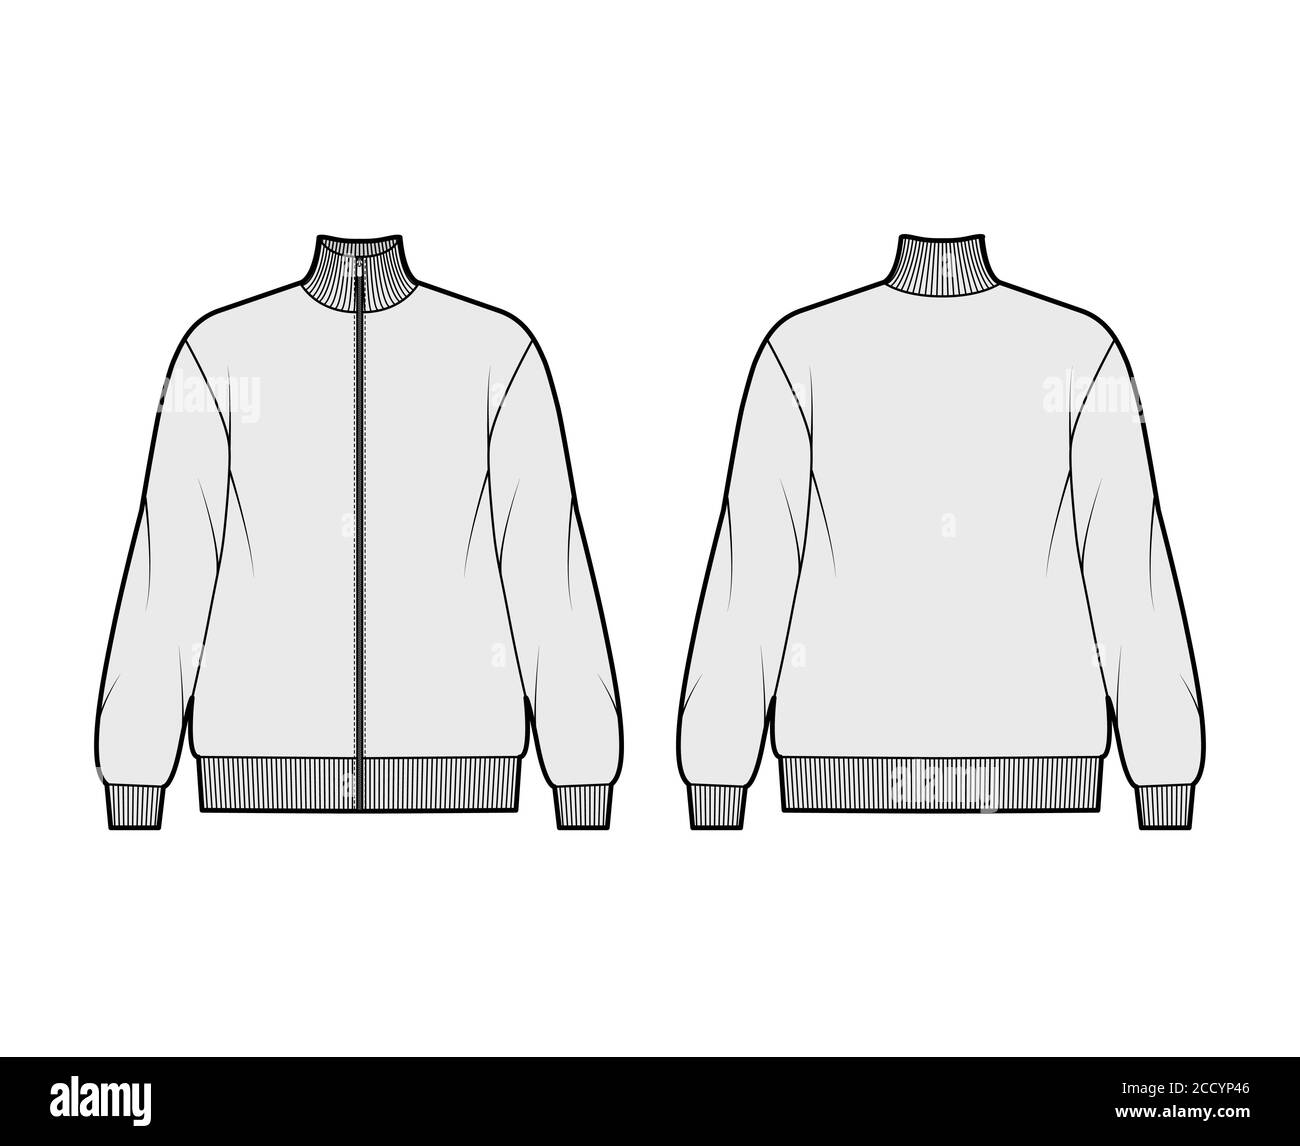 Oversized long-sleeved zip-up sweatshirt technical fashion illustration ...